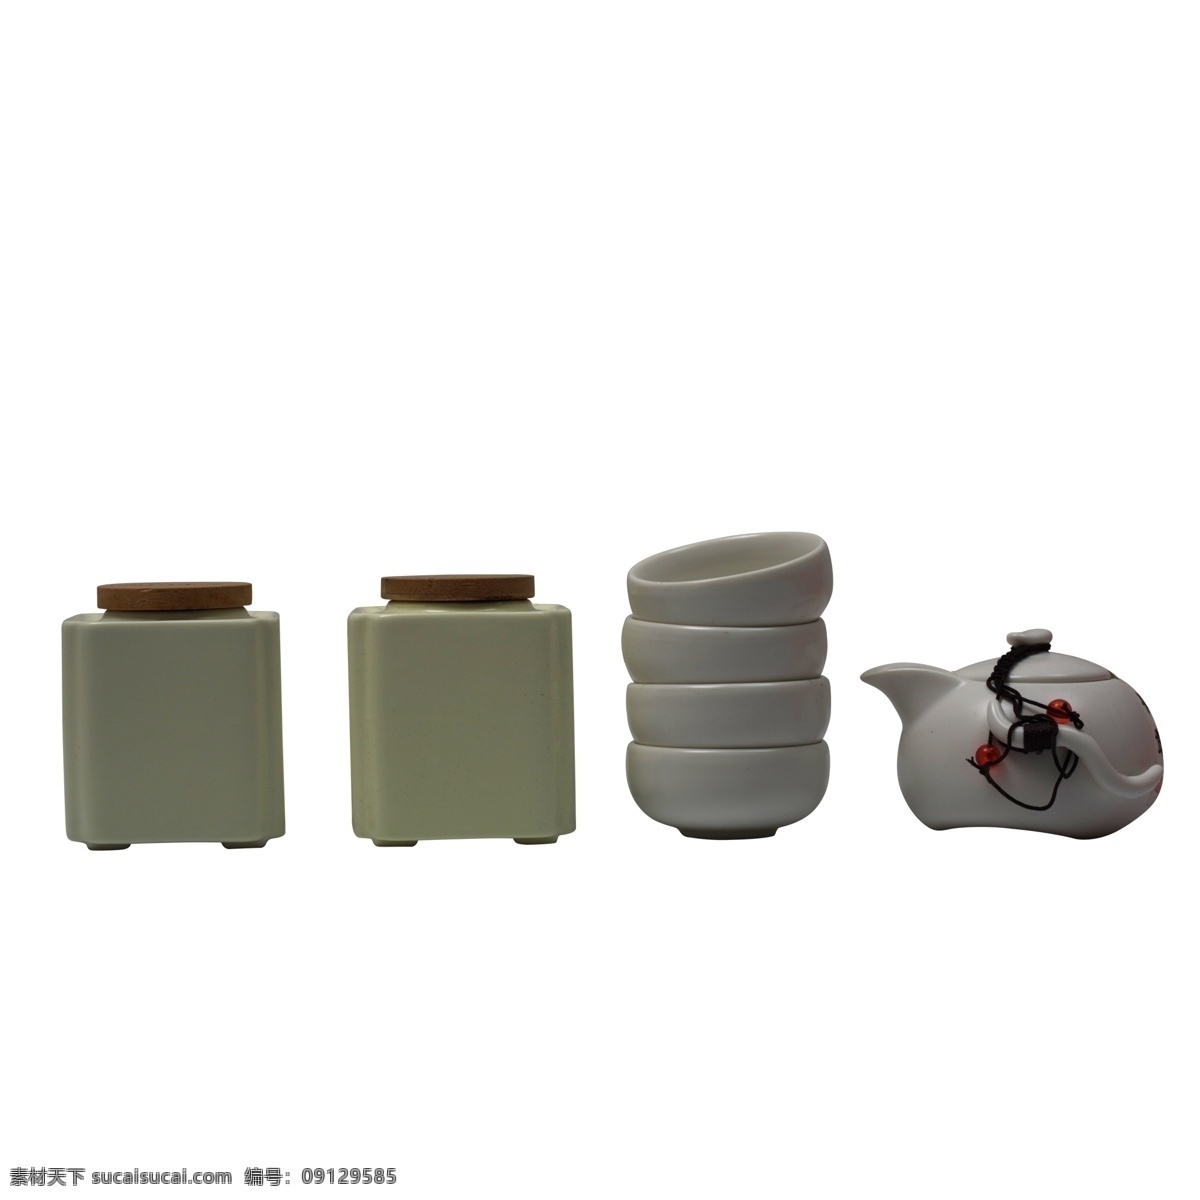 灰色 创意 茶具 摆放 元素 餐具 纹理 质感 圆柱 闪光 茶叶罐子 茶壶 瓷器 抓死内购会 花纹